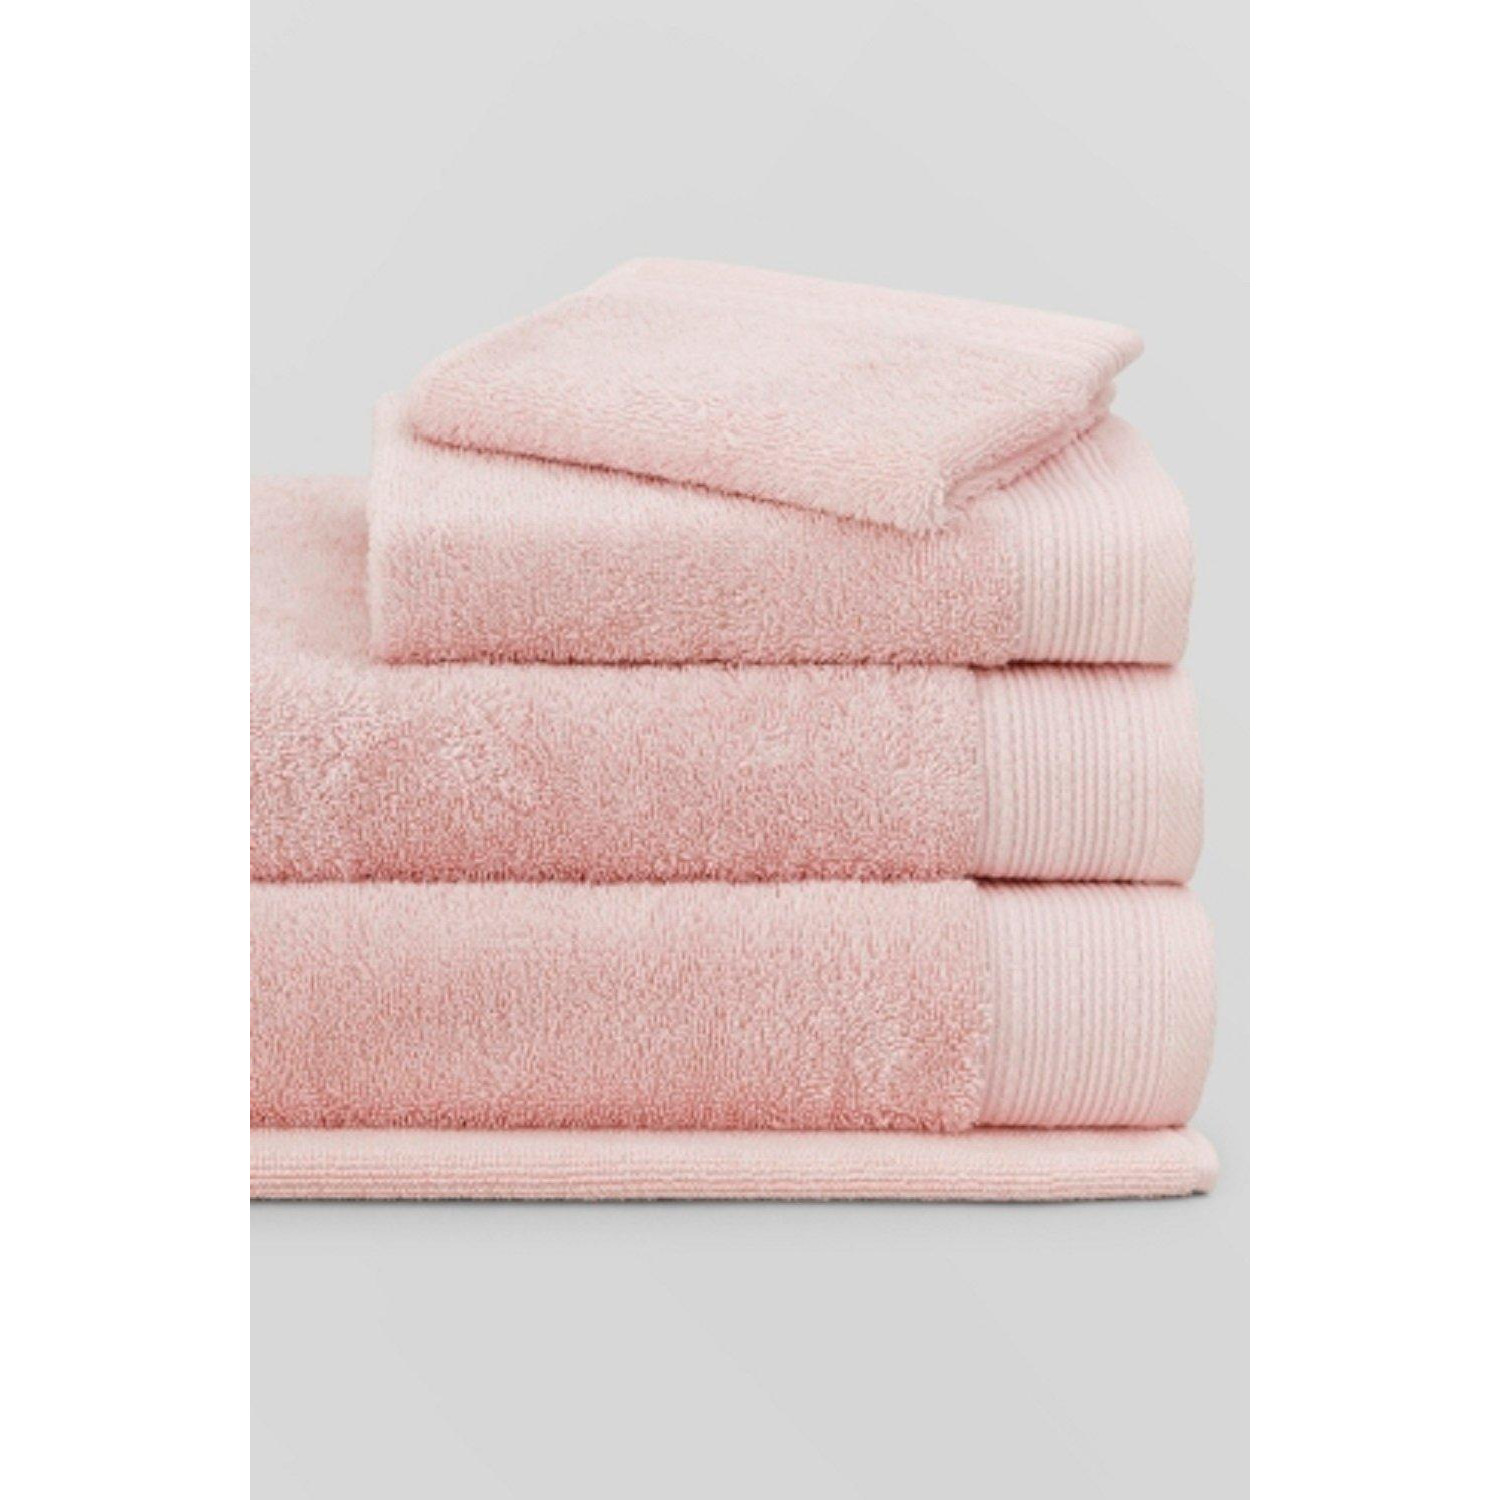 Belford Towel - image 1